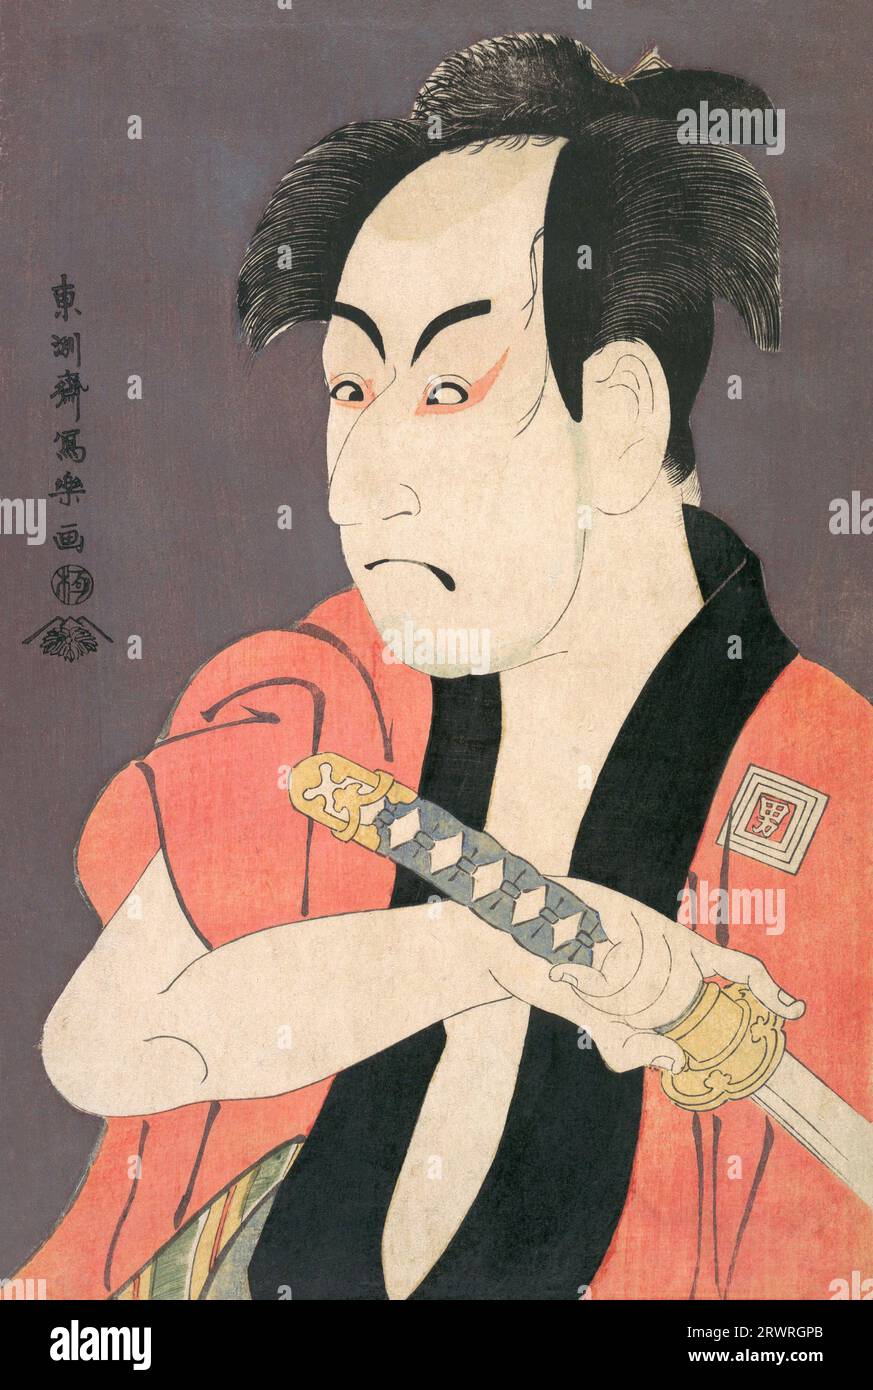 Japon : l'acteur kabuki Ichikawa Omezou dans le rôle de Yakko Ippei. Estampe sur bois Ukiyo-e de Toshusai Sharaku (1770 - 1825), c. 1794. Tōshūsai Sharaku est largement considéré comme l'un des grands maîtres de l'impression sur bois au Japon. On sait peu de chose de lui, en dehors de ses empreintes ukiyo-e ; ni son vrai nom ni les dates de sa naissance ou de sa mort ne sont connus avec aucune certitude. Sa carrière active en tant qu'artiste sur bois semble avoir duré seulement dix mois au milieu de la période Edo de l'histoire japonaise, du milieu de 1794 au début de 1795. Banque D'Images